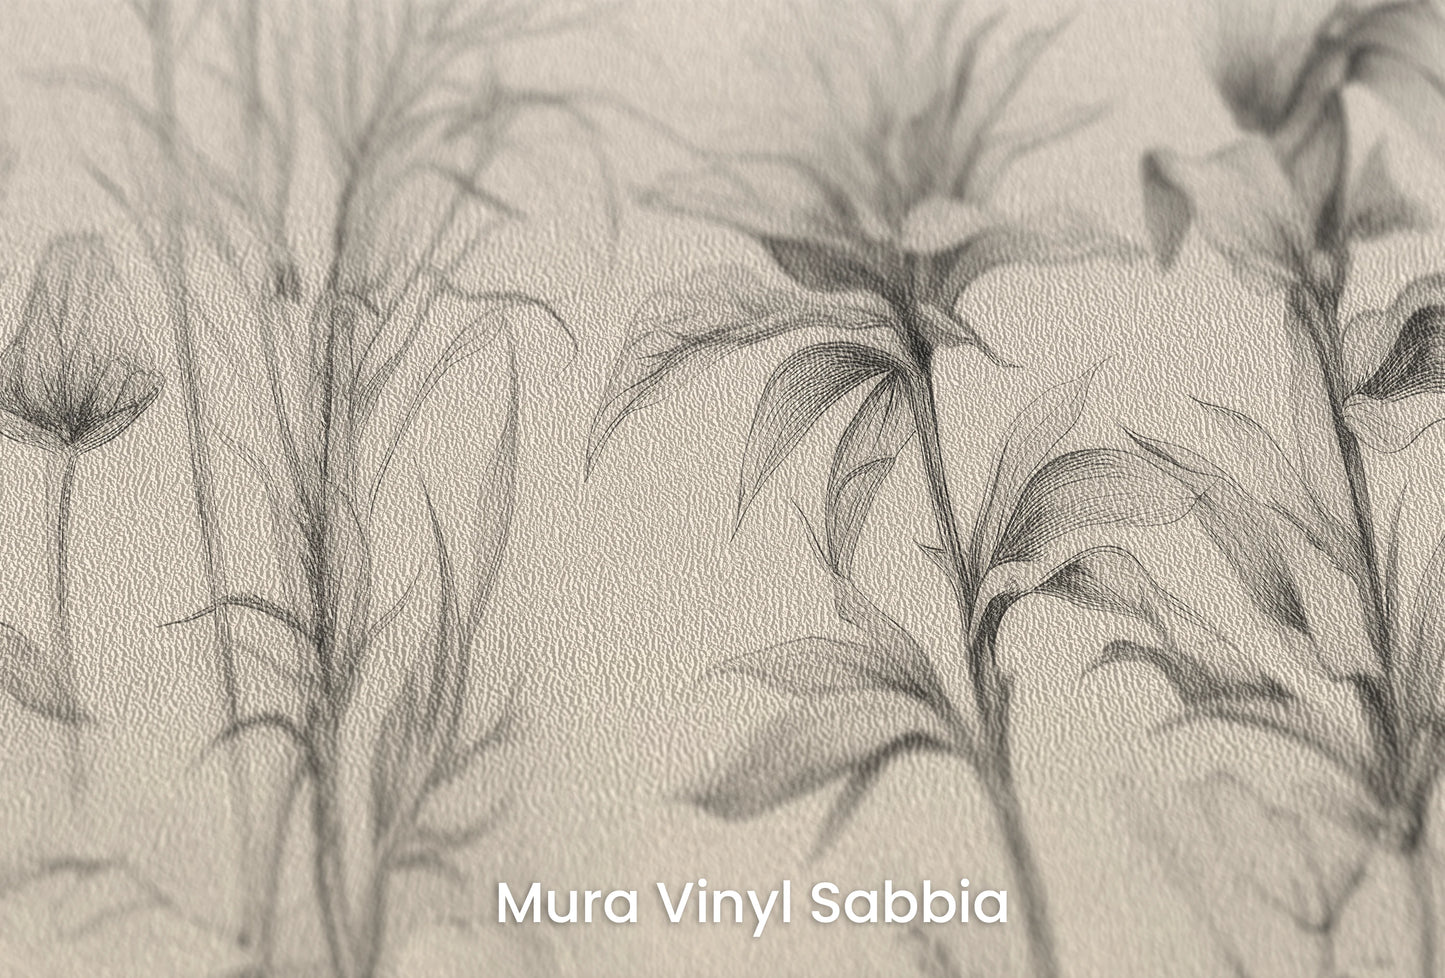 Zbliżenie na artystyczną fototapetę o nazwie Floral Tranquility na podłożu Mura Vinyl Sabbia struktura grubego ziarna piasku.